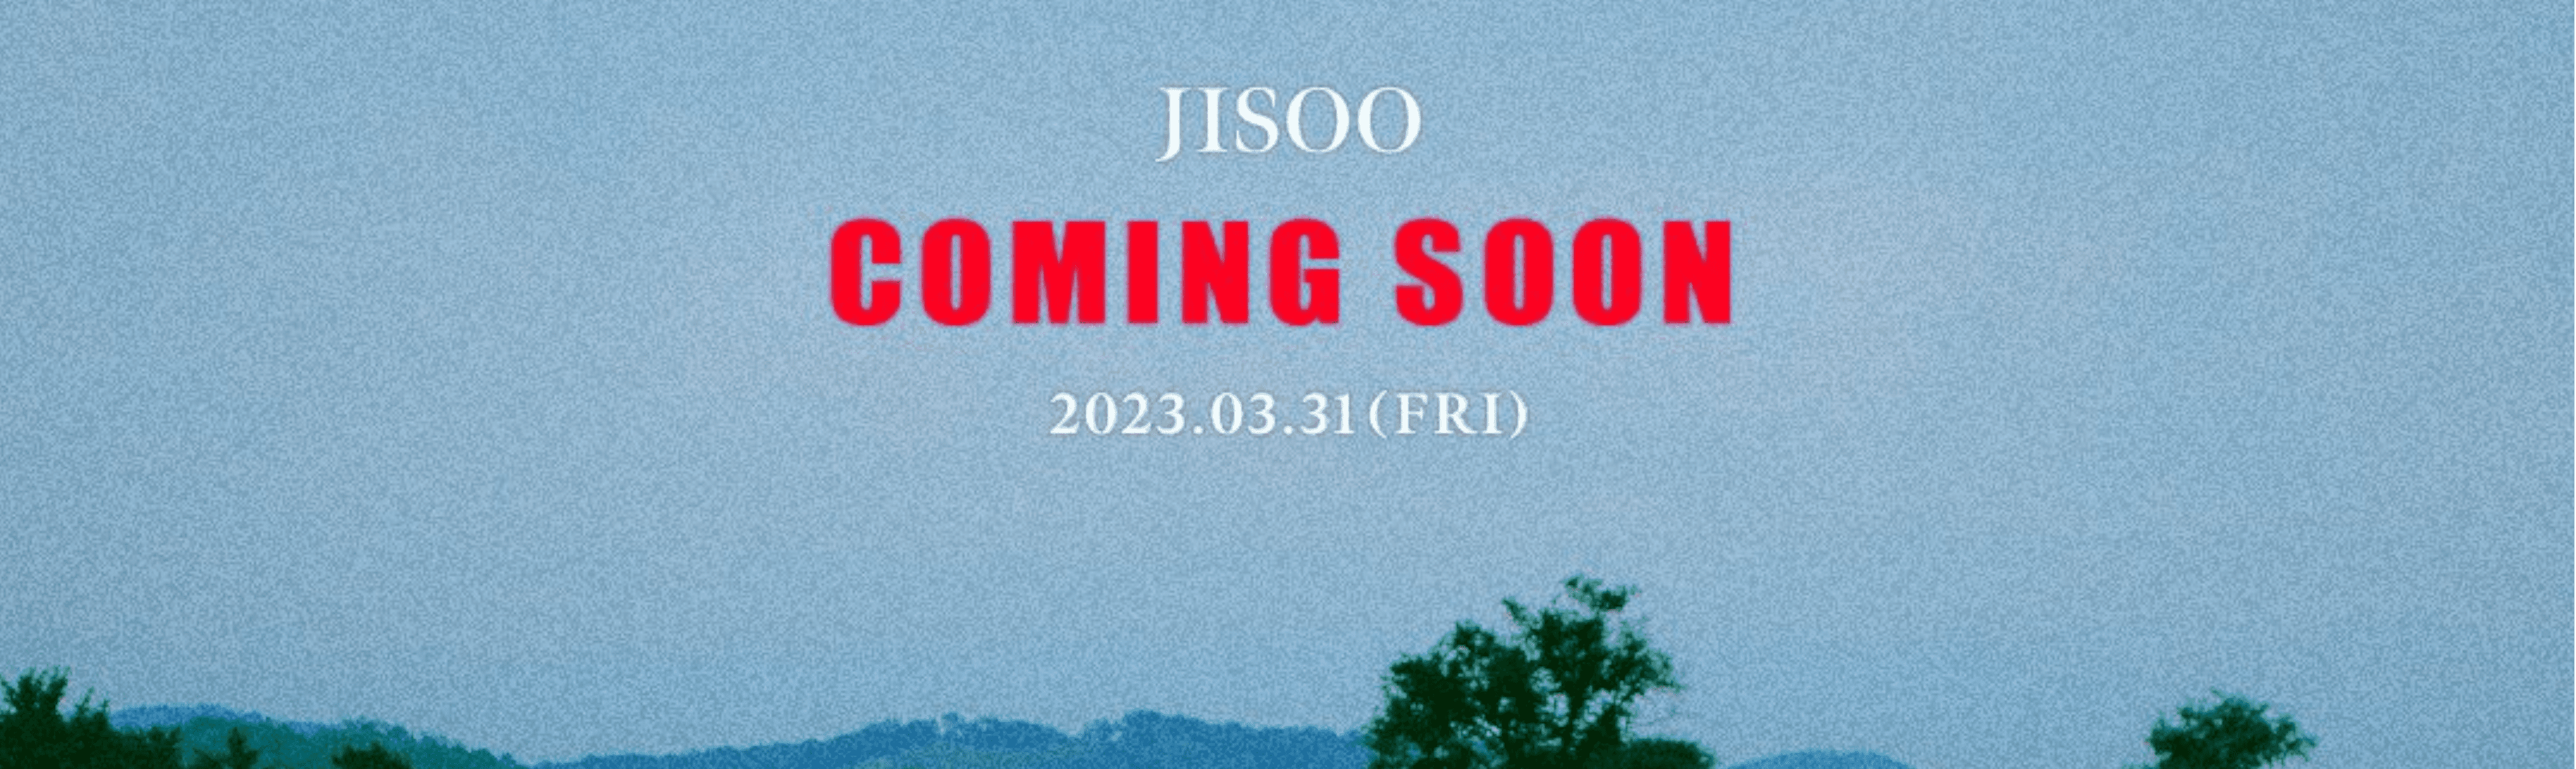 Jisoo (Blackpink) Solo Debüt COMING SOON Poster